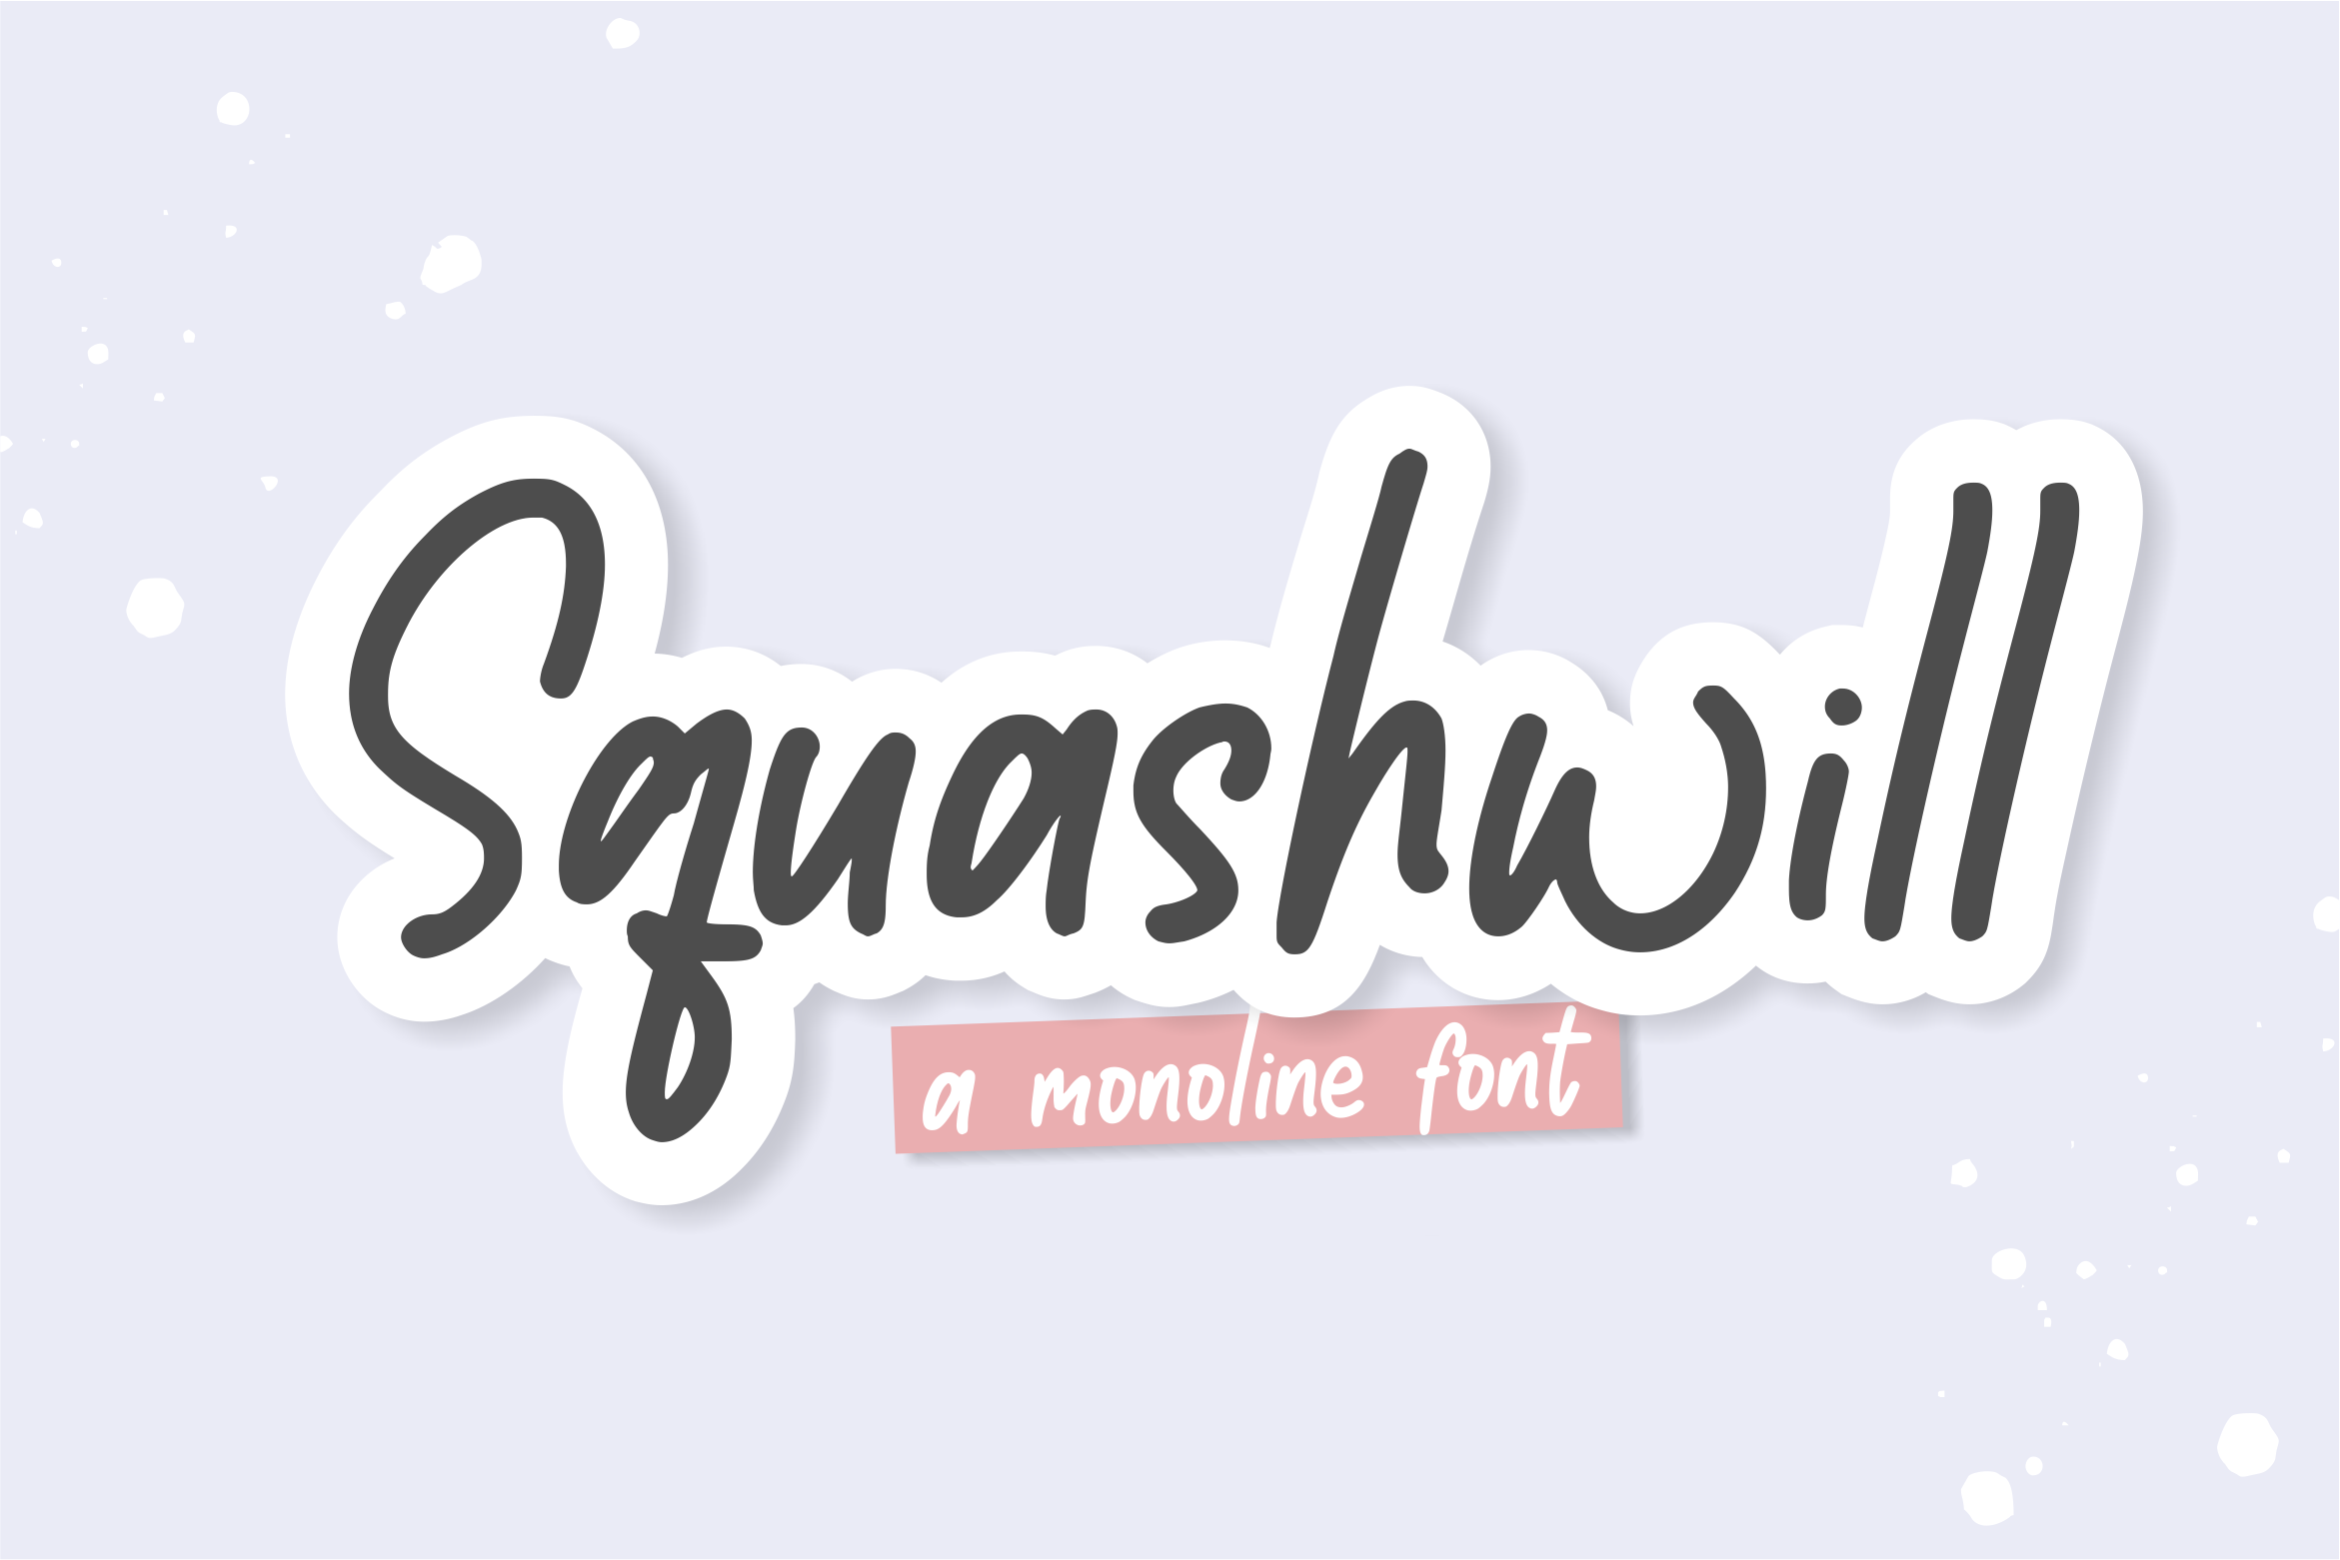 Squashwill Handwritten Font